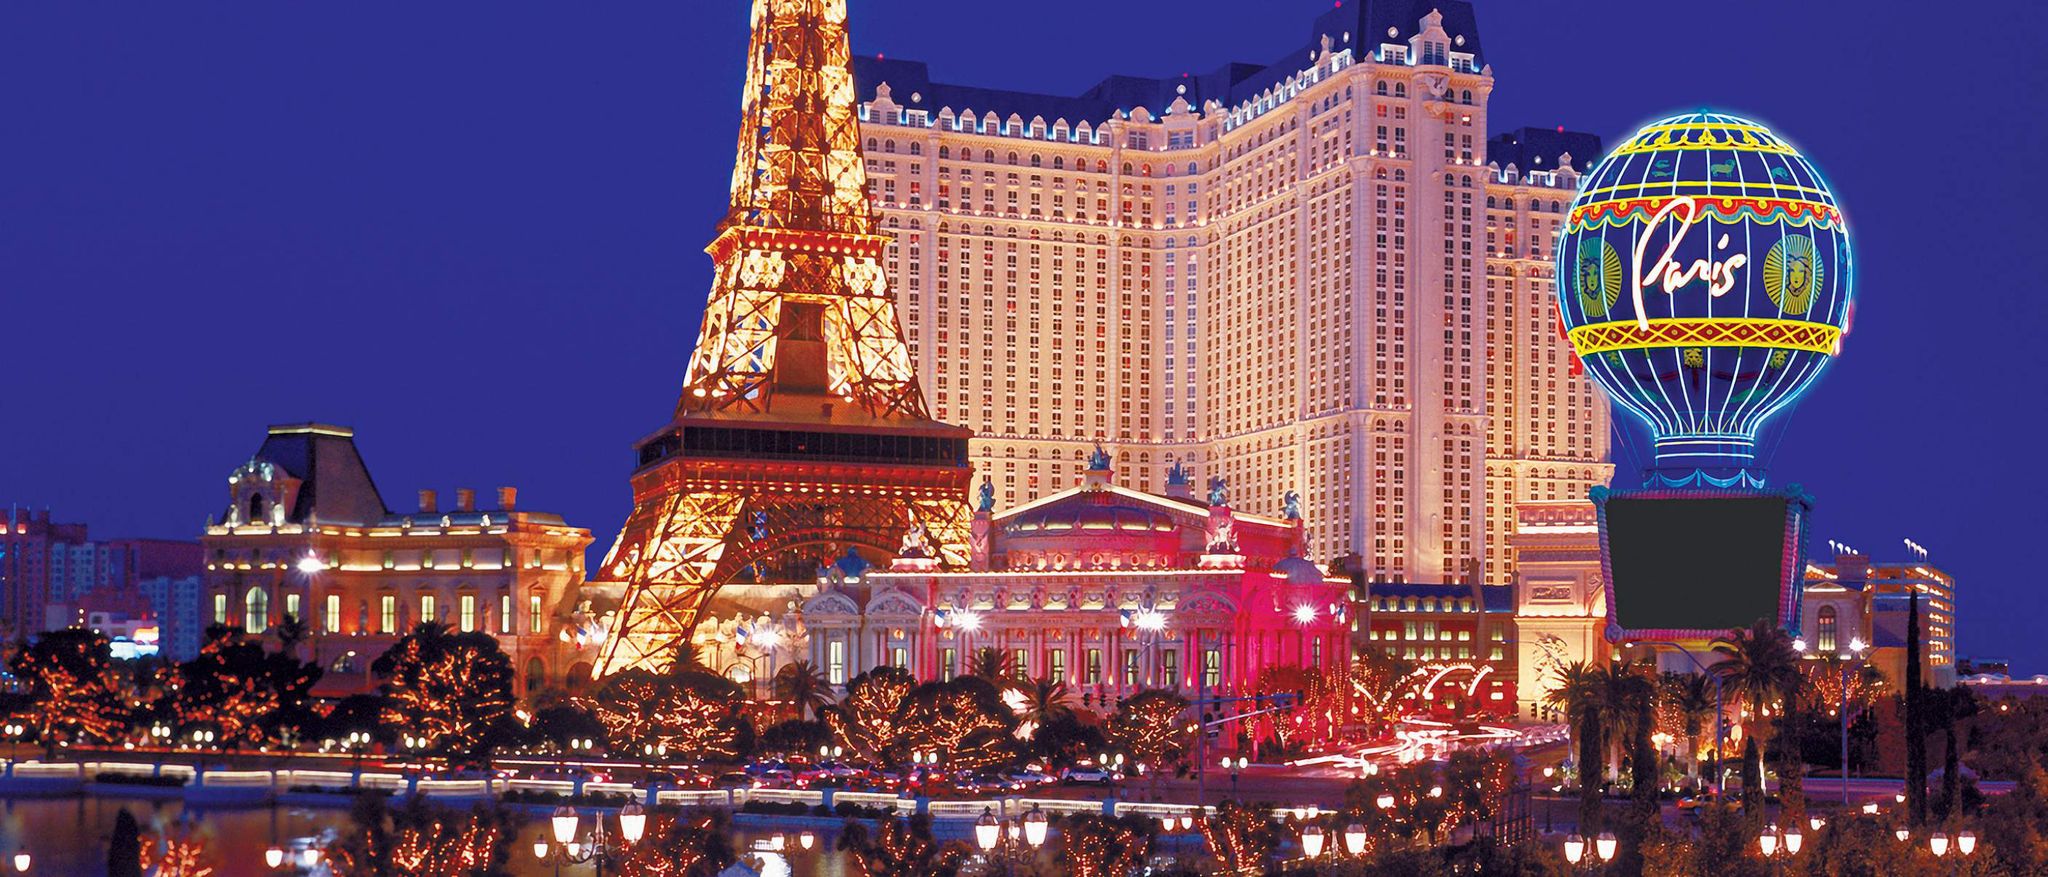 Inside Paris Las Vegas Casino, the Strip, Las Vegas Boulevard, Las